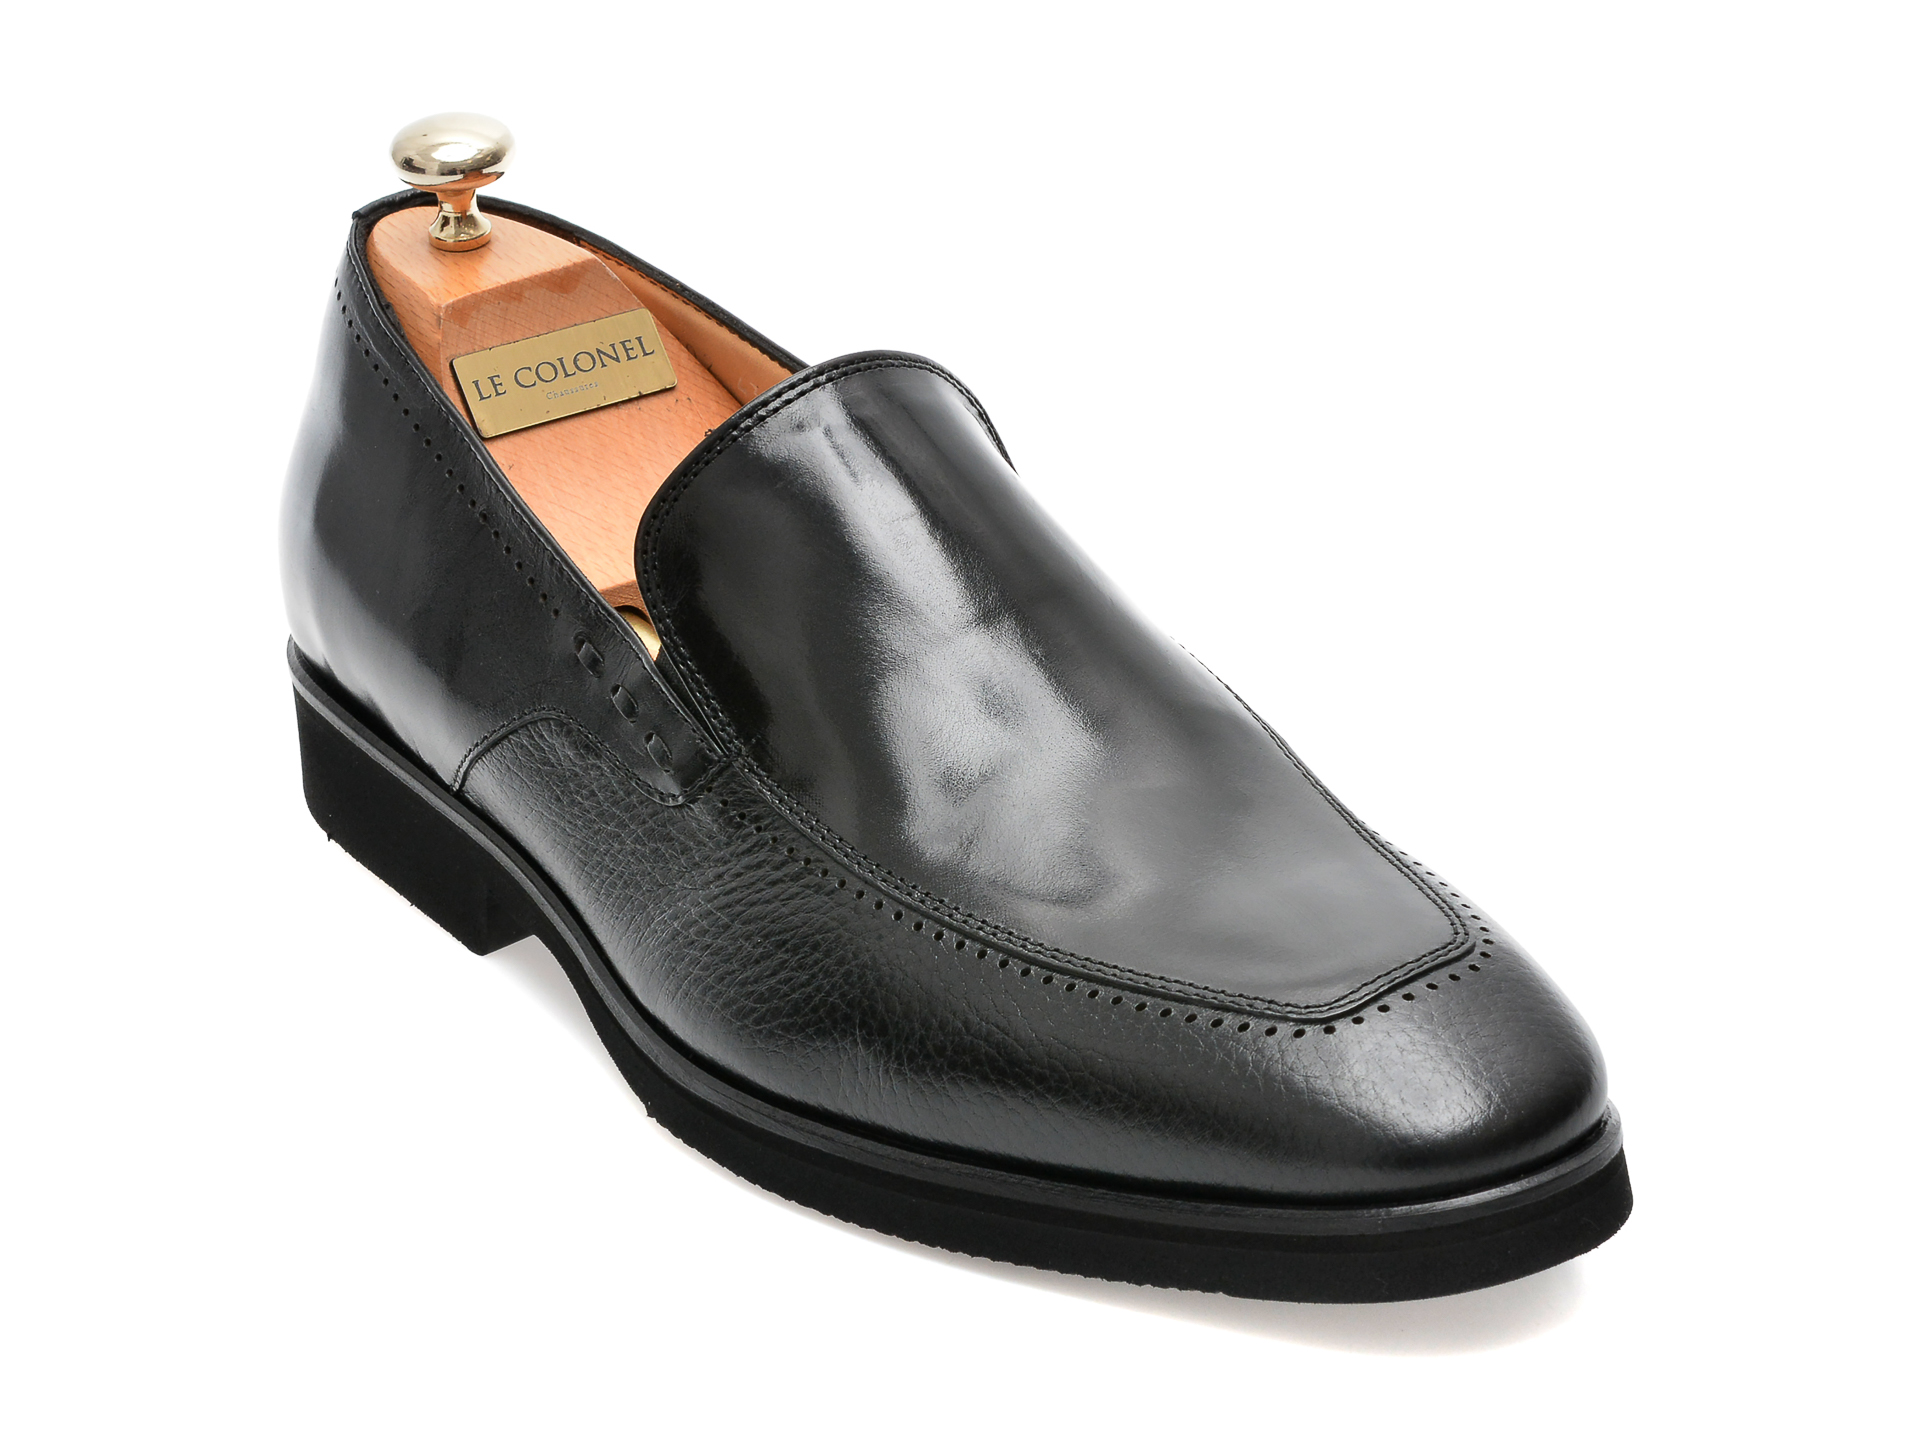 Pantofi LE COLONEL negri, 48702, din piele naturala barbati 2023-03-21